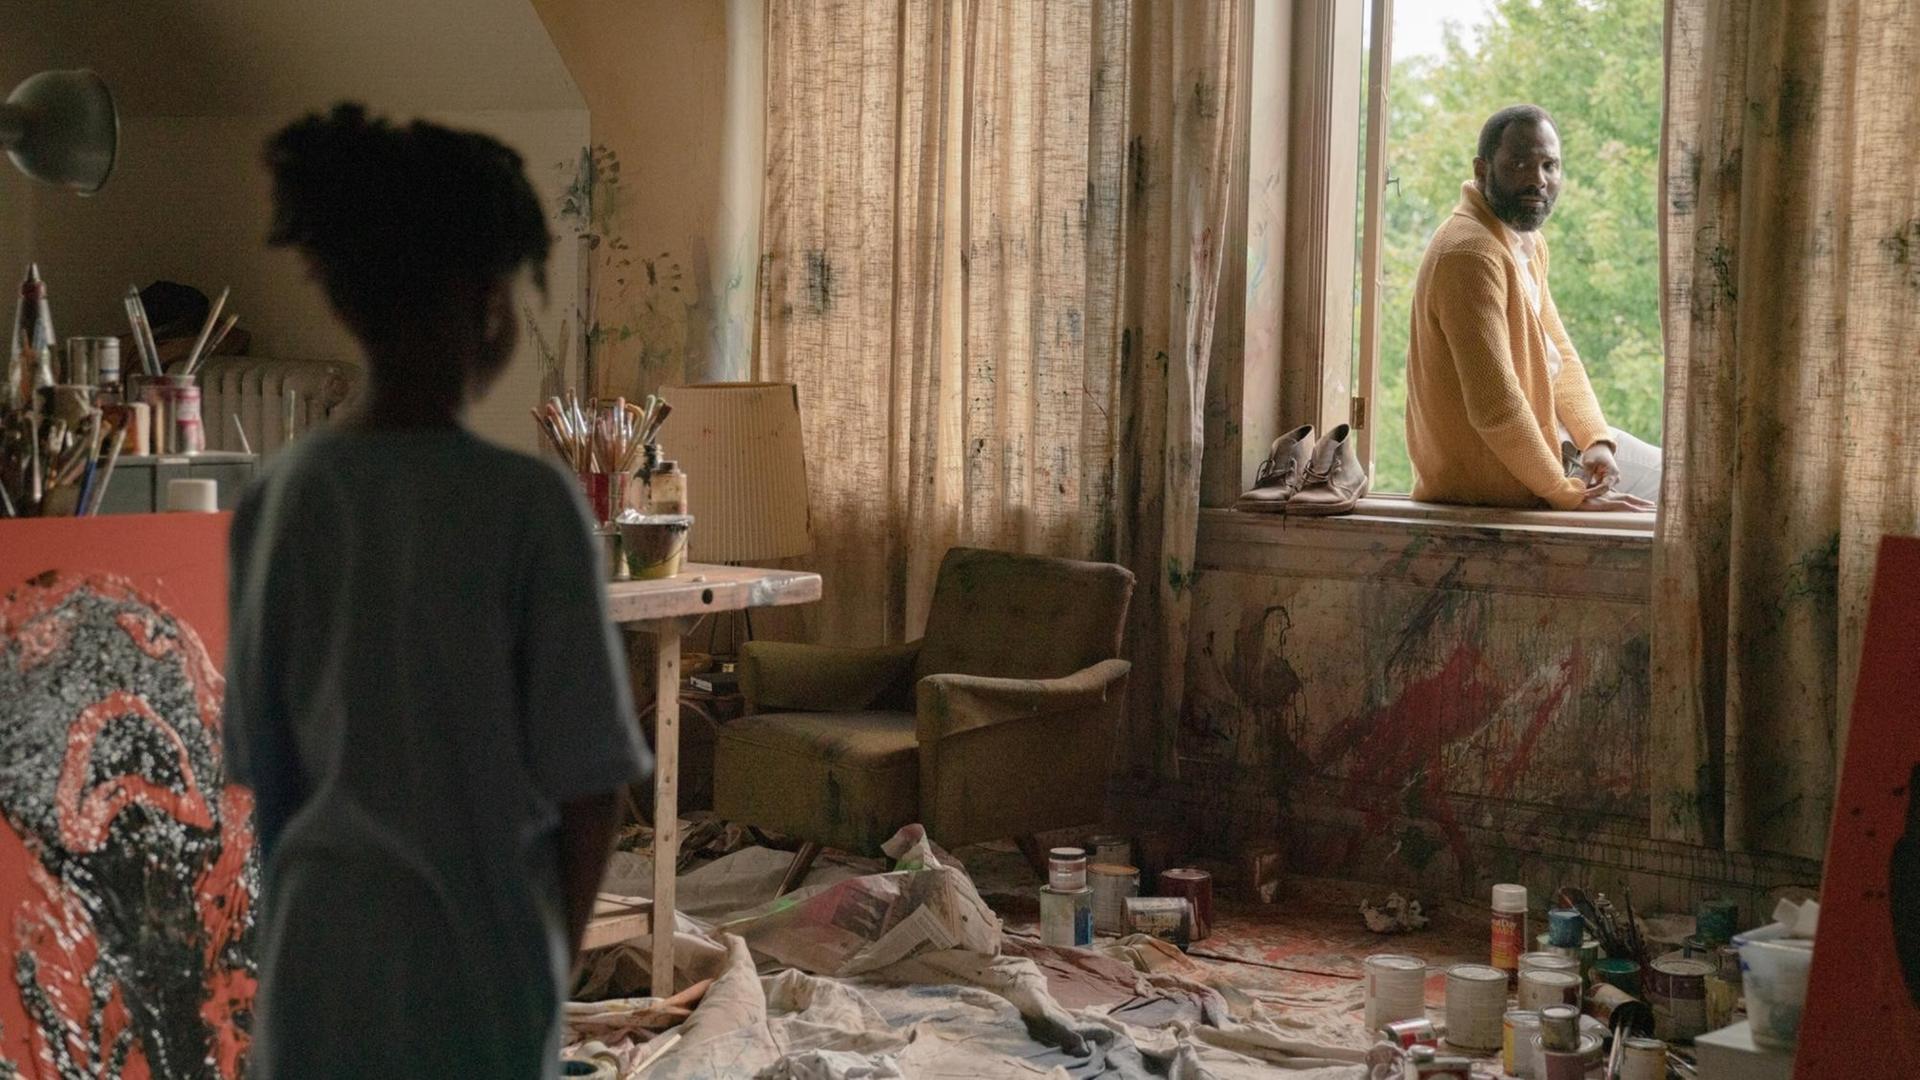 Szene aus dem Film "Candyman": ein verwüstetes Zimmer, links steht ein Mädchen, das zum Fenster blickt, auf dessen Rand ein Mann sitzt und zu ihm schaut. (links: Hannah Love Jones, rechts: Carl Clemons-Hopkins)